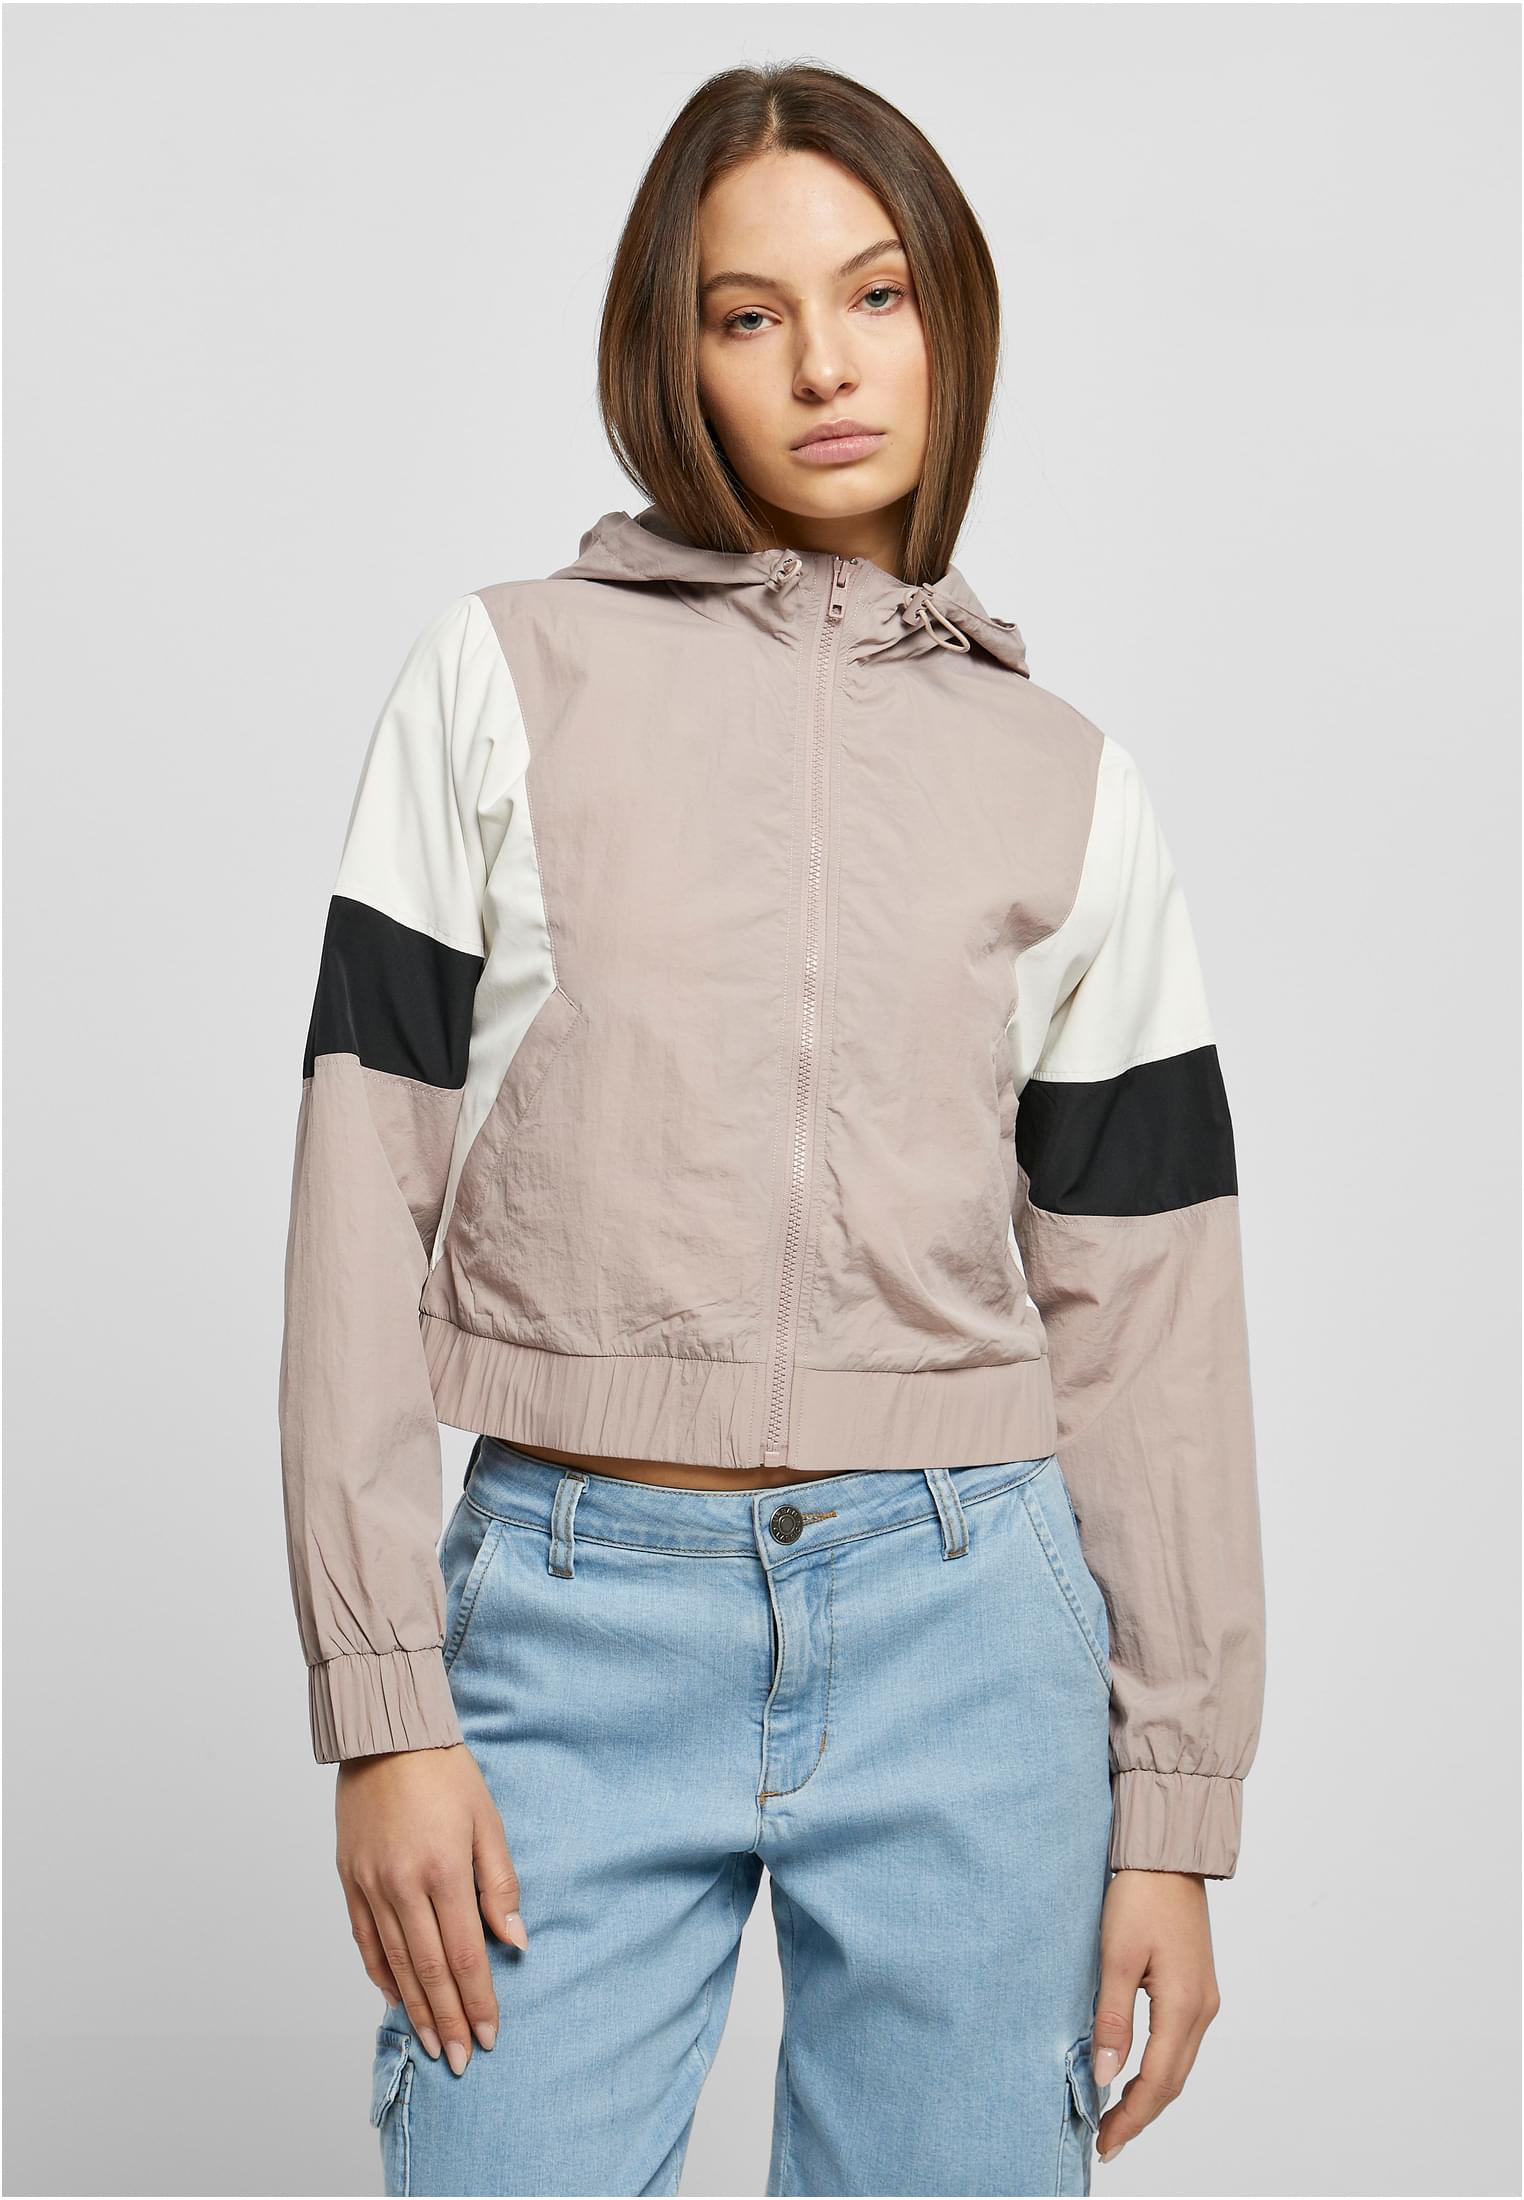 Women's short 3-color creased jacket dukrose/white sand/black